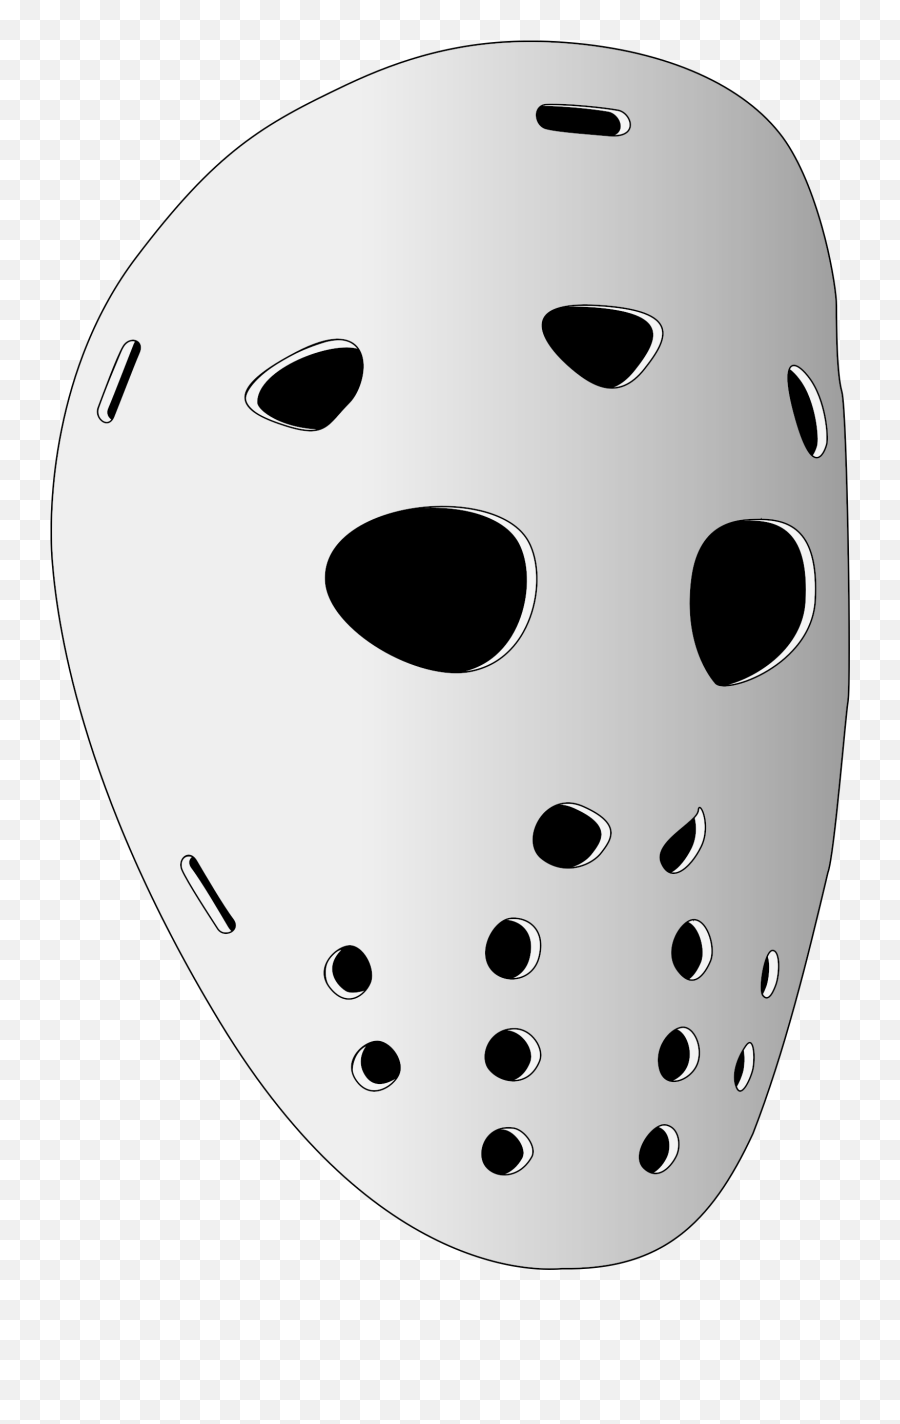 Hockey Sobre Hielo - Hockey Mask Transparent Emoji,Hockey Mask Emoji